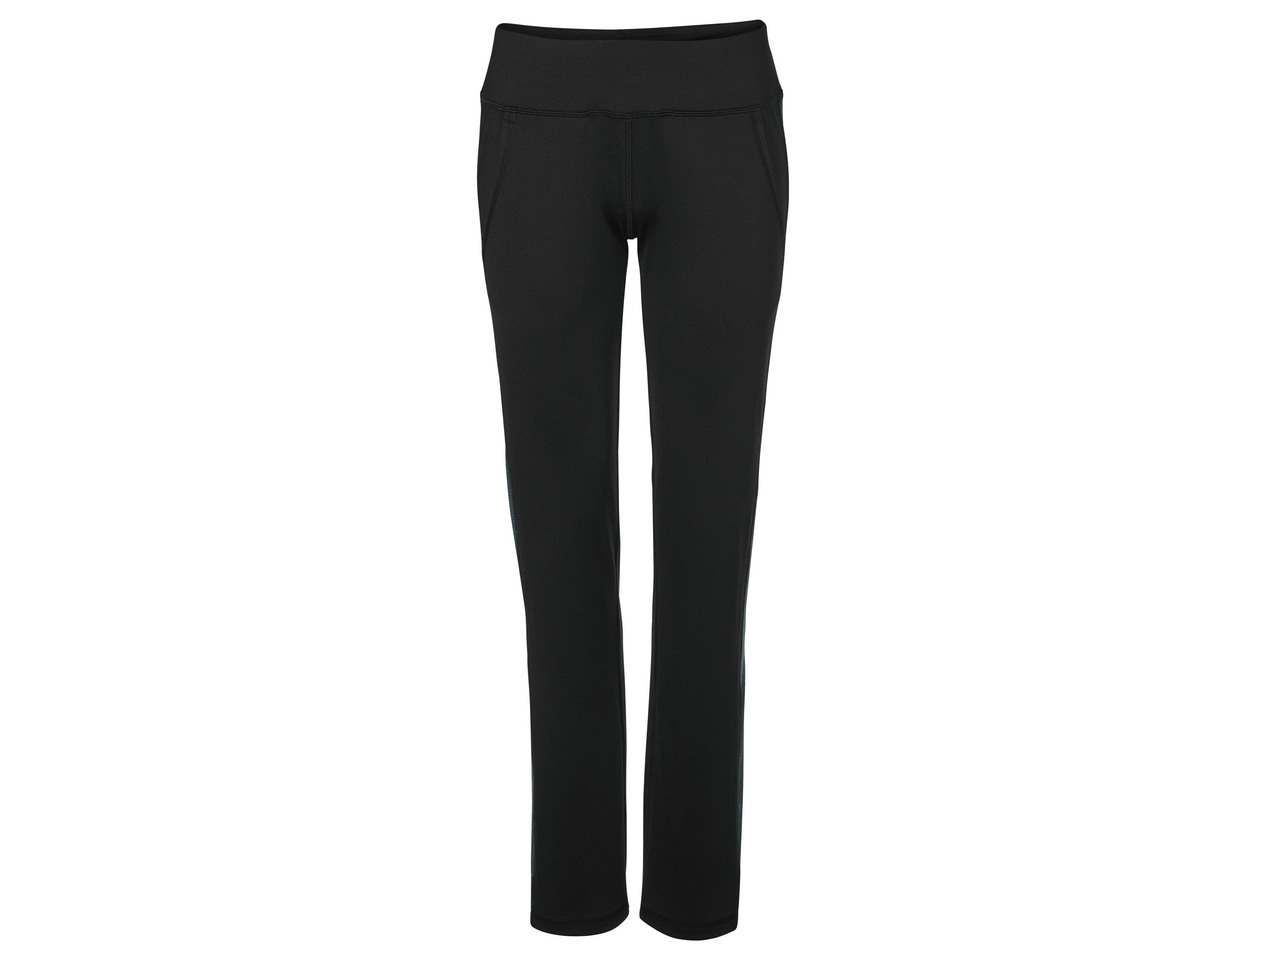 Ladies' Long or Capri-Length Trousers